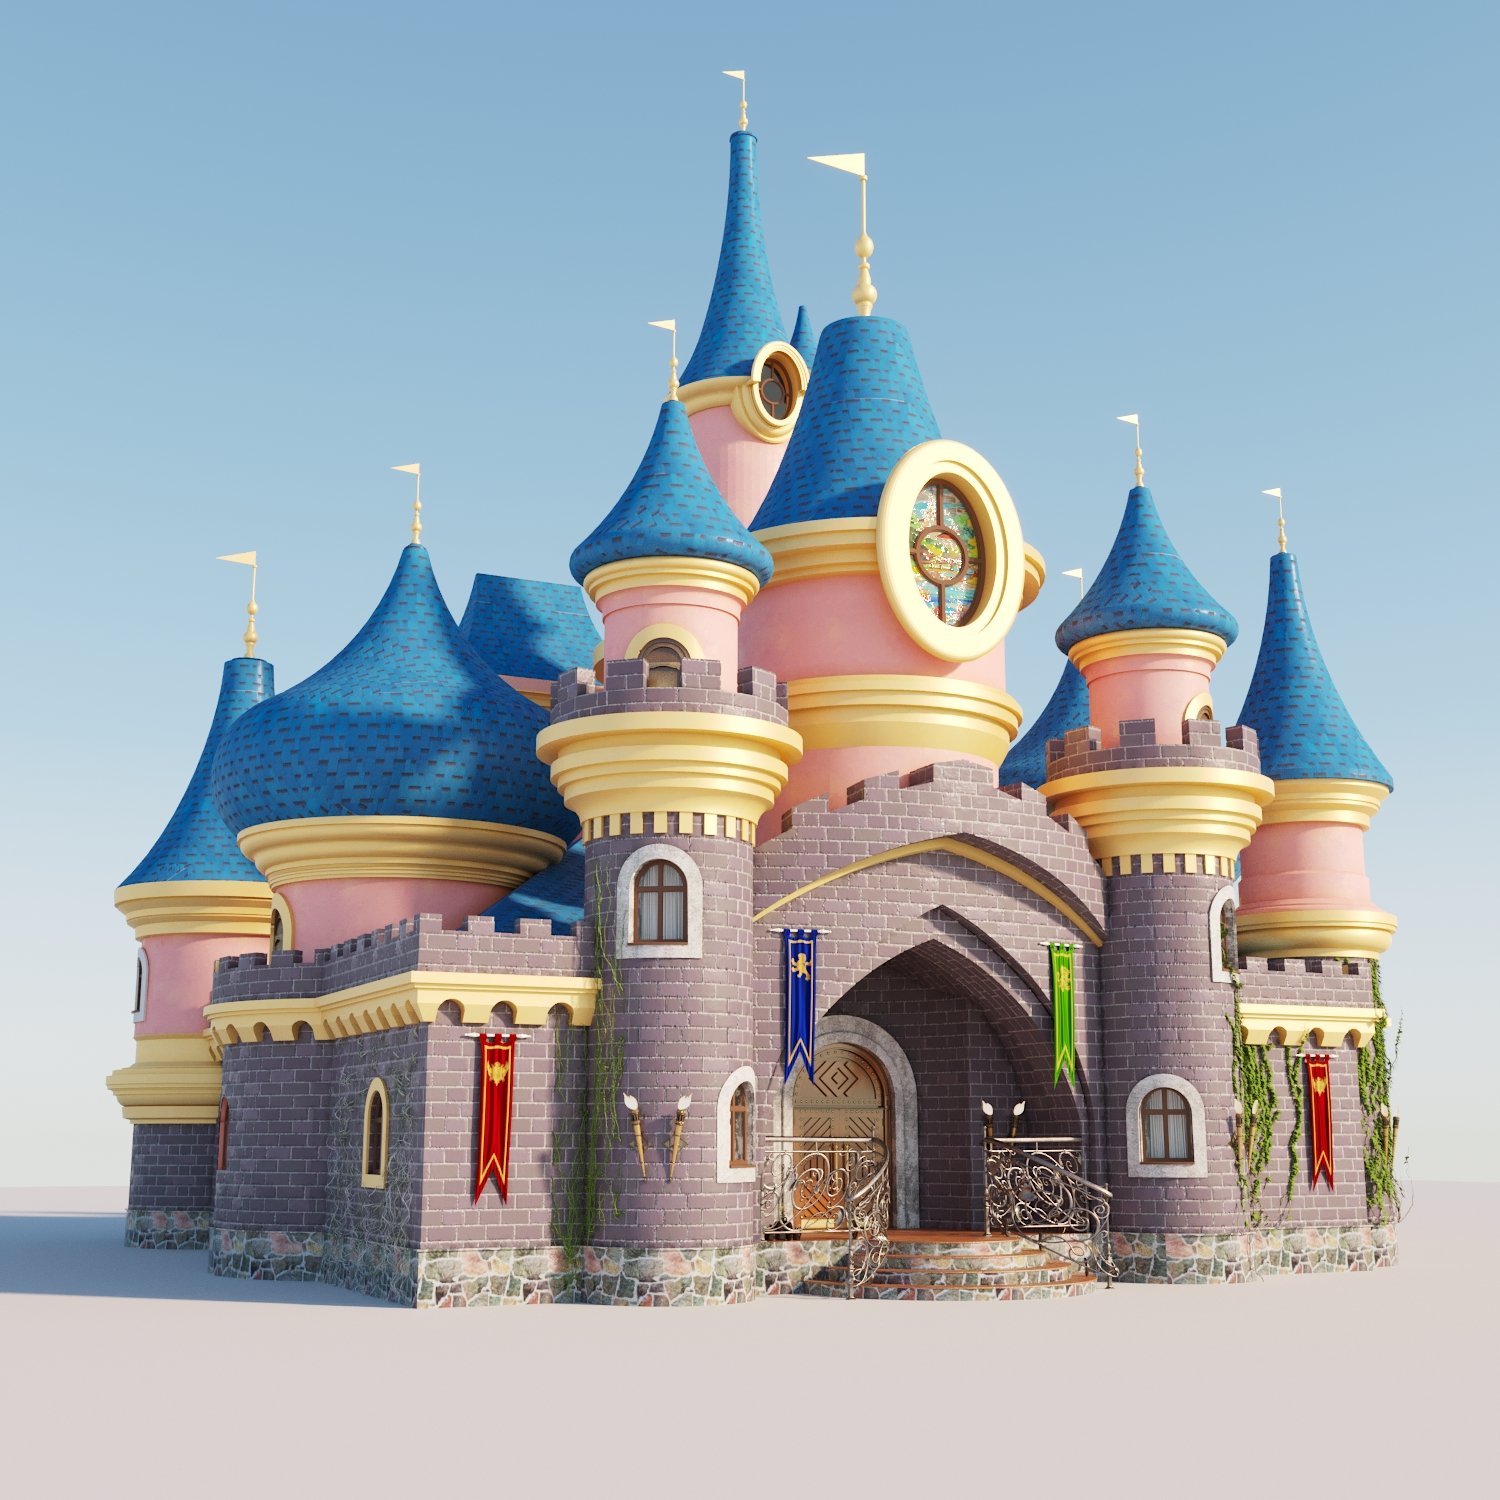 Disneyland castle 3D model - TurboSquid 1958978